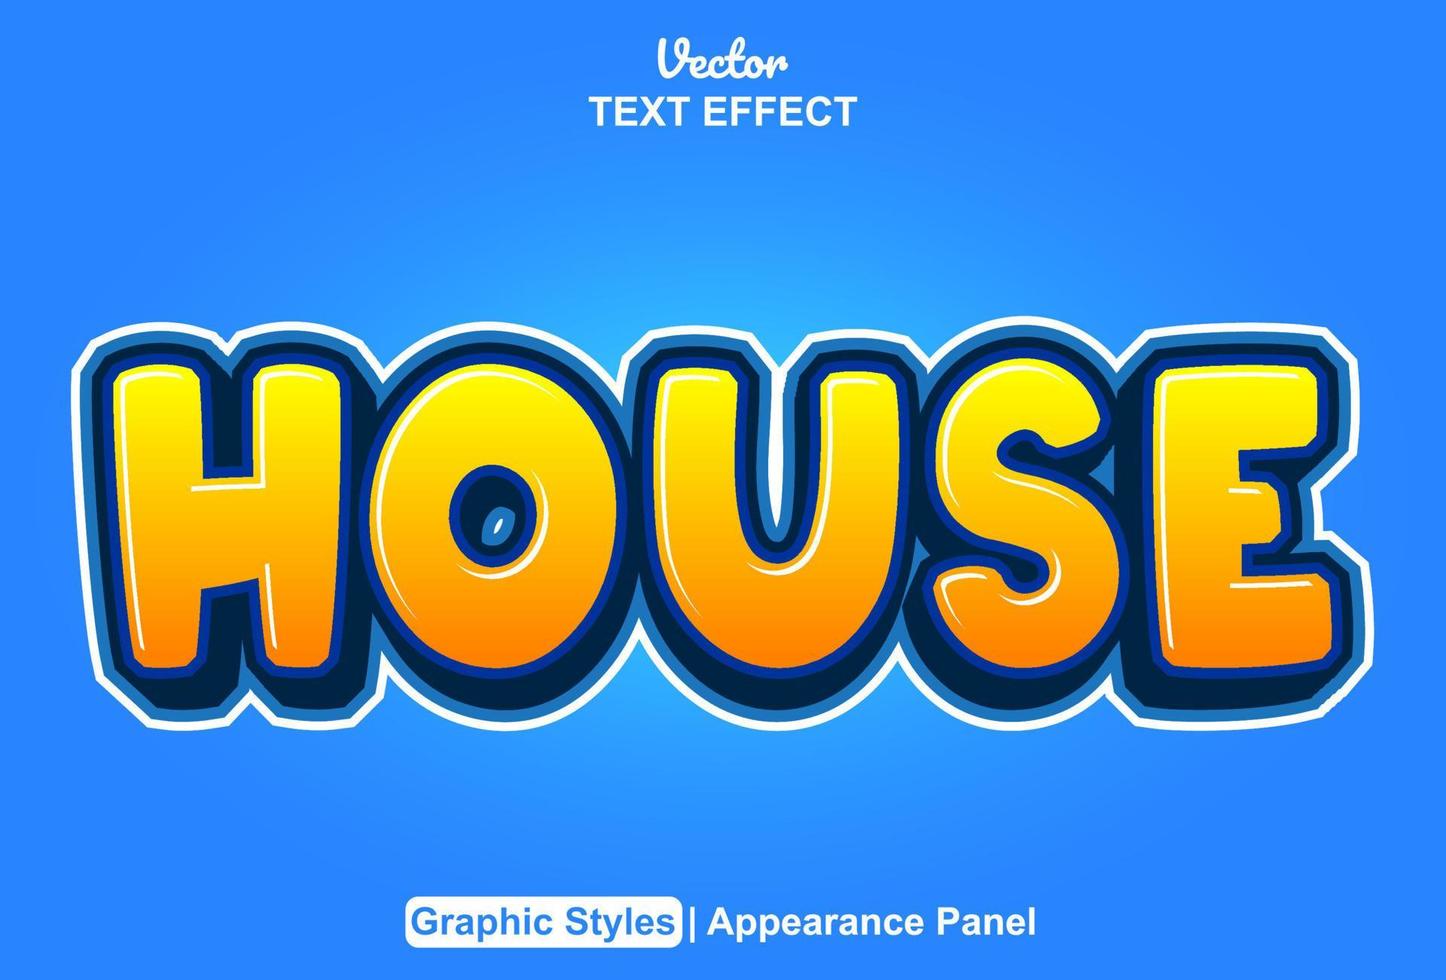 efecto de texto de la casa con estilo gráfico y editable. vector